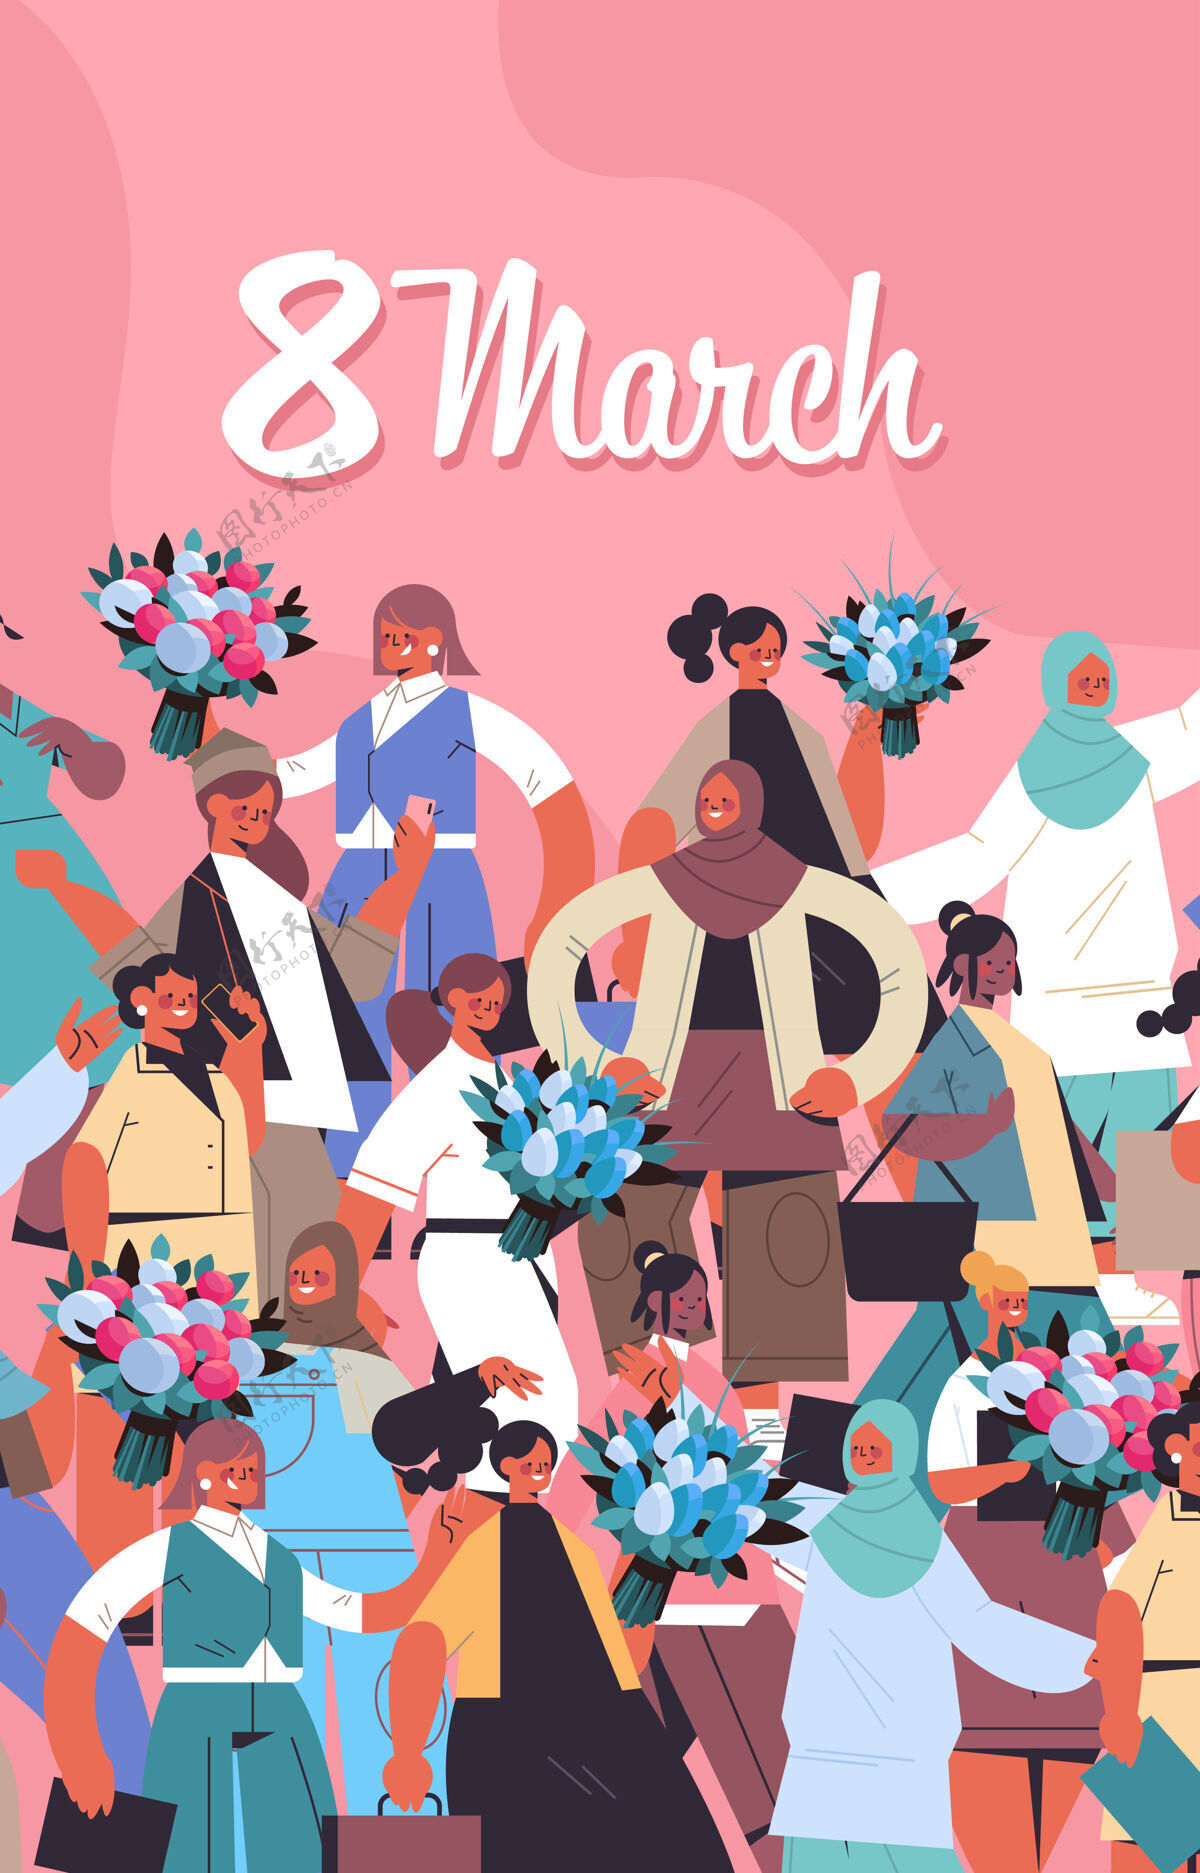 传单混合种族妇女与鲜花庆祝妇女节3月8日节日庆祝概念垂直插图人物女性卡通